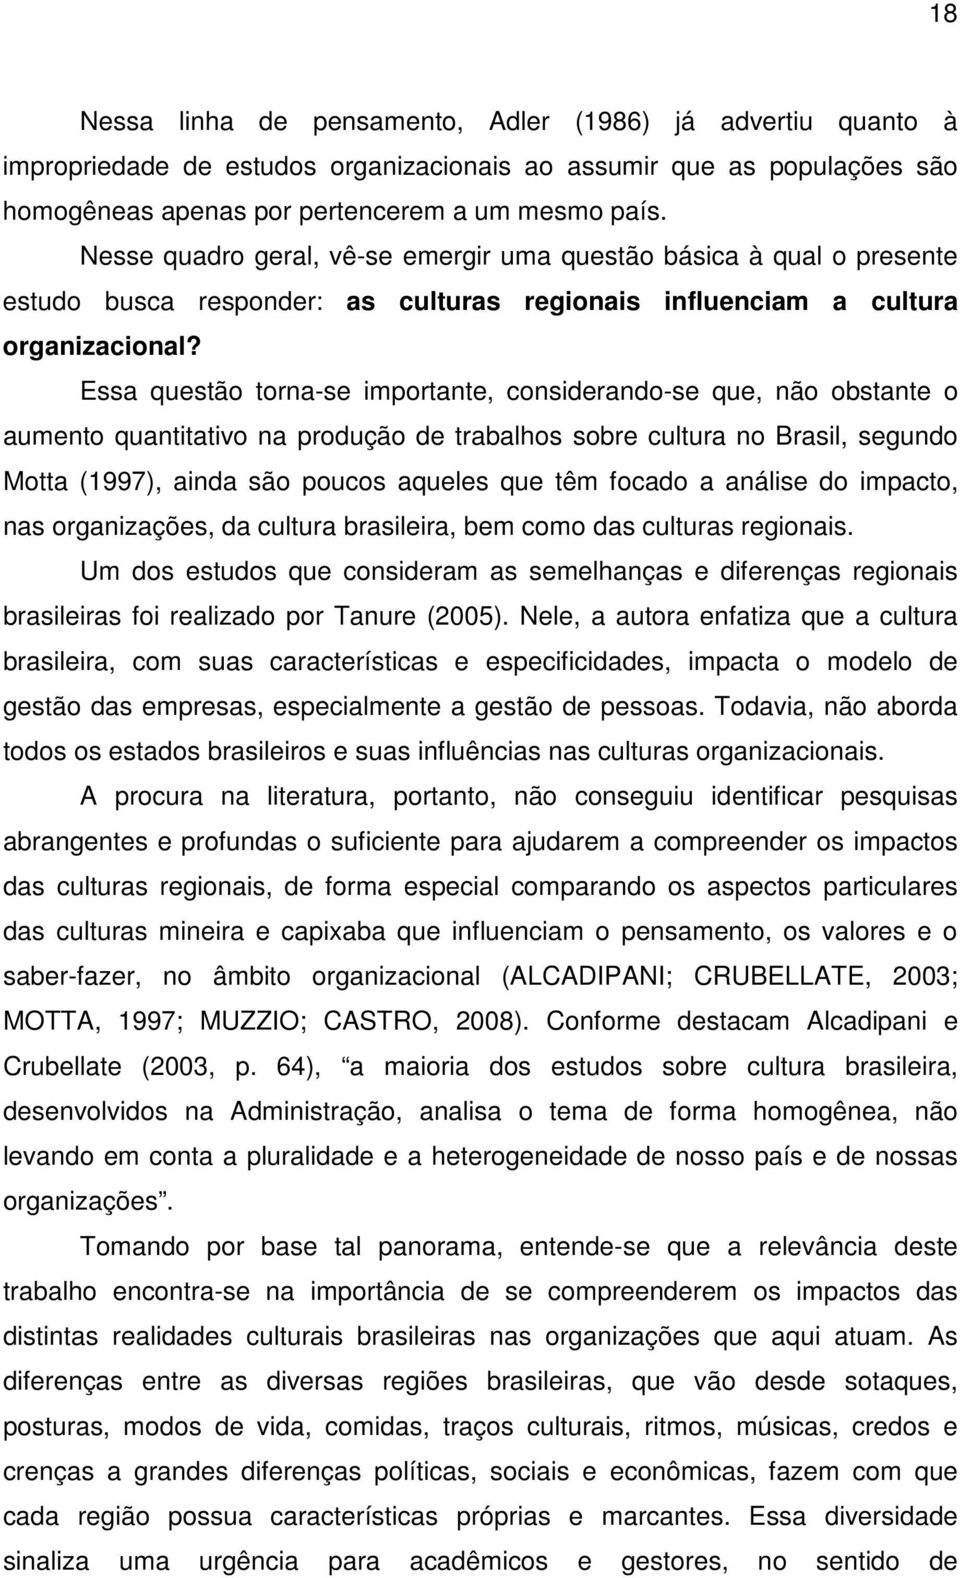 Essa questão torna-se importante, considerando-se que, não obstante o aumento quantitativo na produção de trabalhos sobre cultura no Brasil, segundo Motta (1997), ainda são poucos aqueles que têm